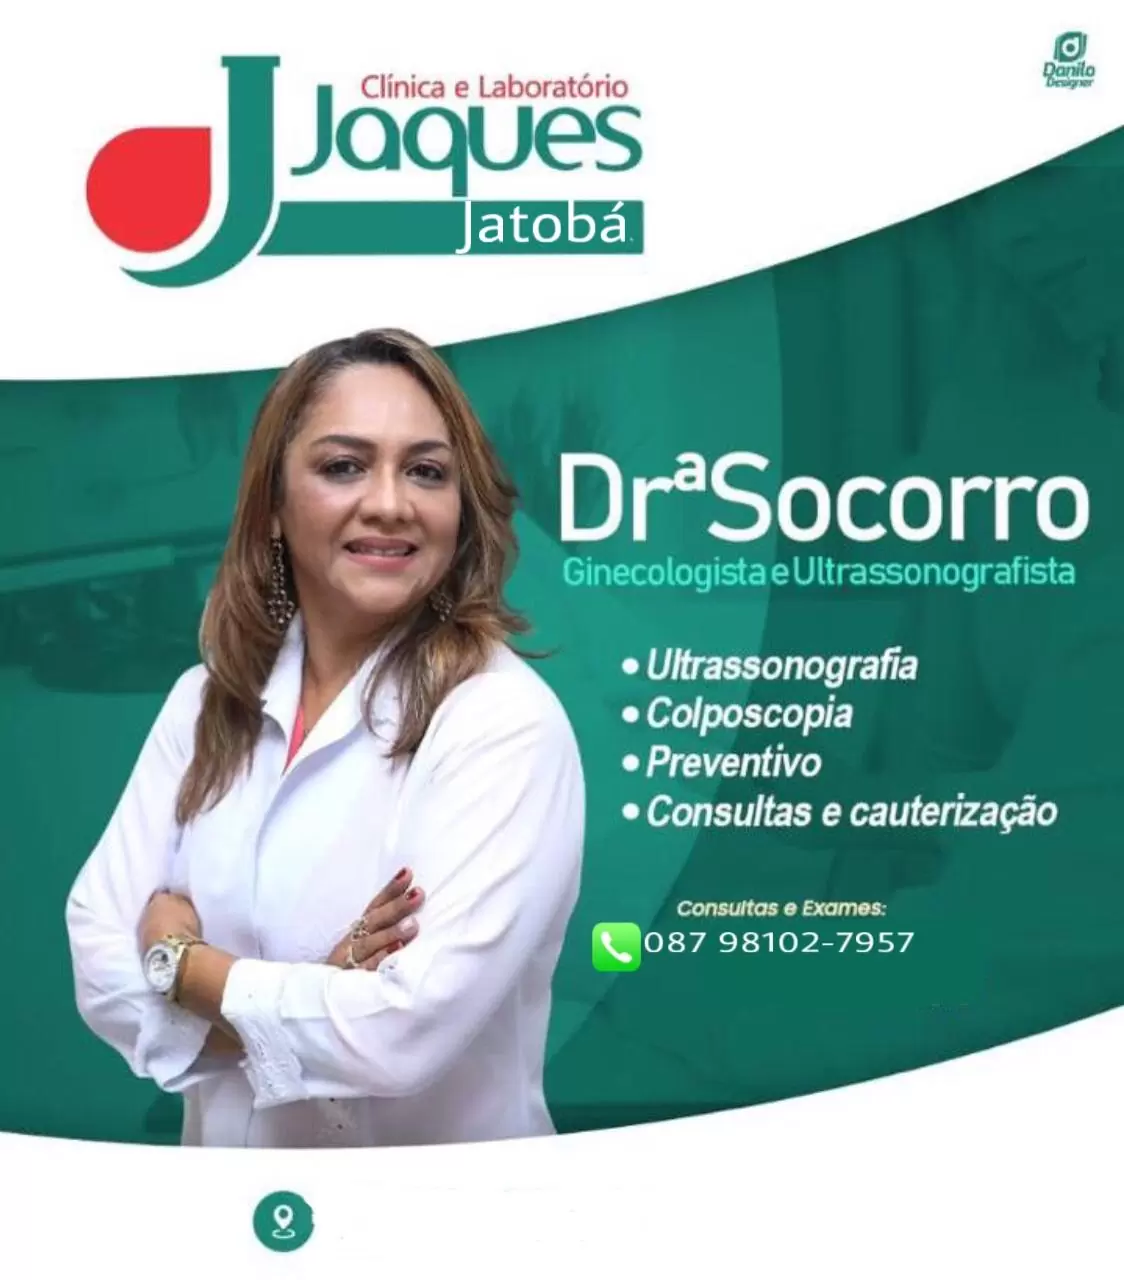 Jatobá: Drª Socorro Realizará Consultas Em Ginecologia E Ultrassonografia Quinta-Feira (05/08) Na Clínica E Laboratório Jaques